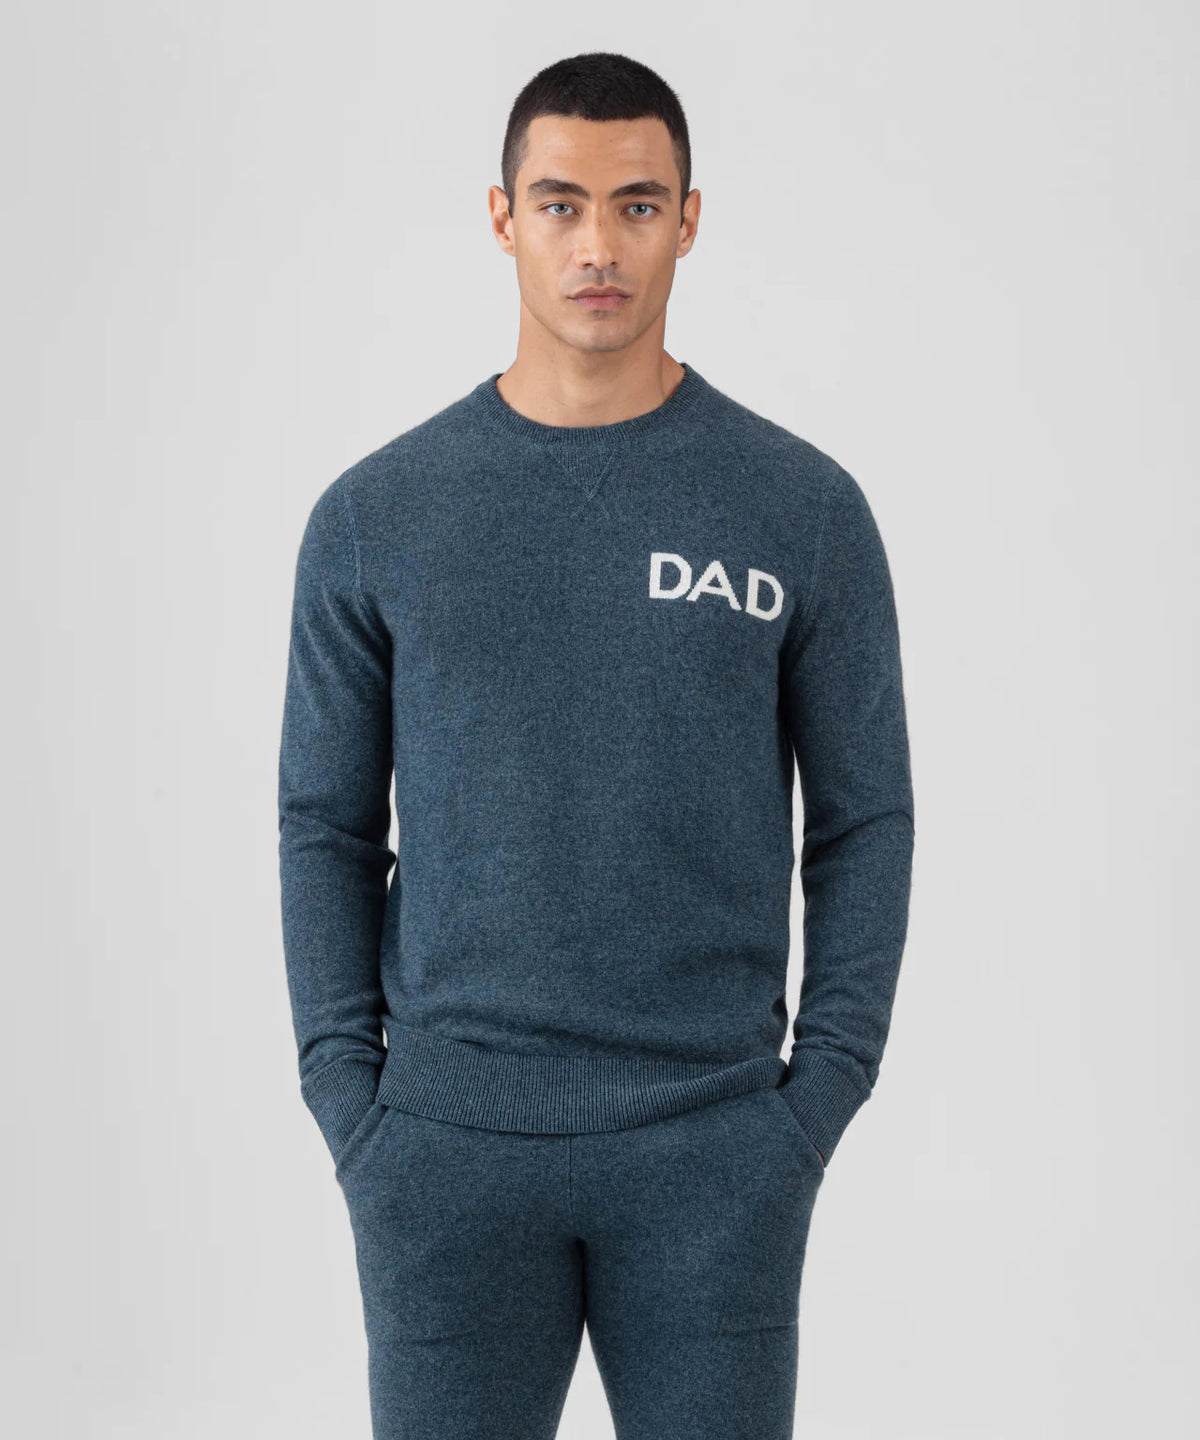 Cashmere Sweater DAD. Ron Dorff
